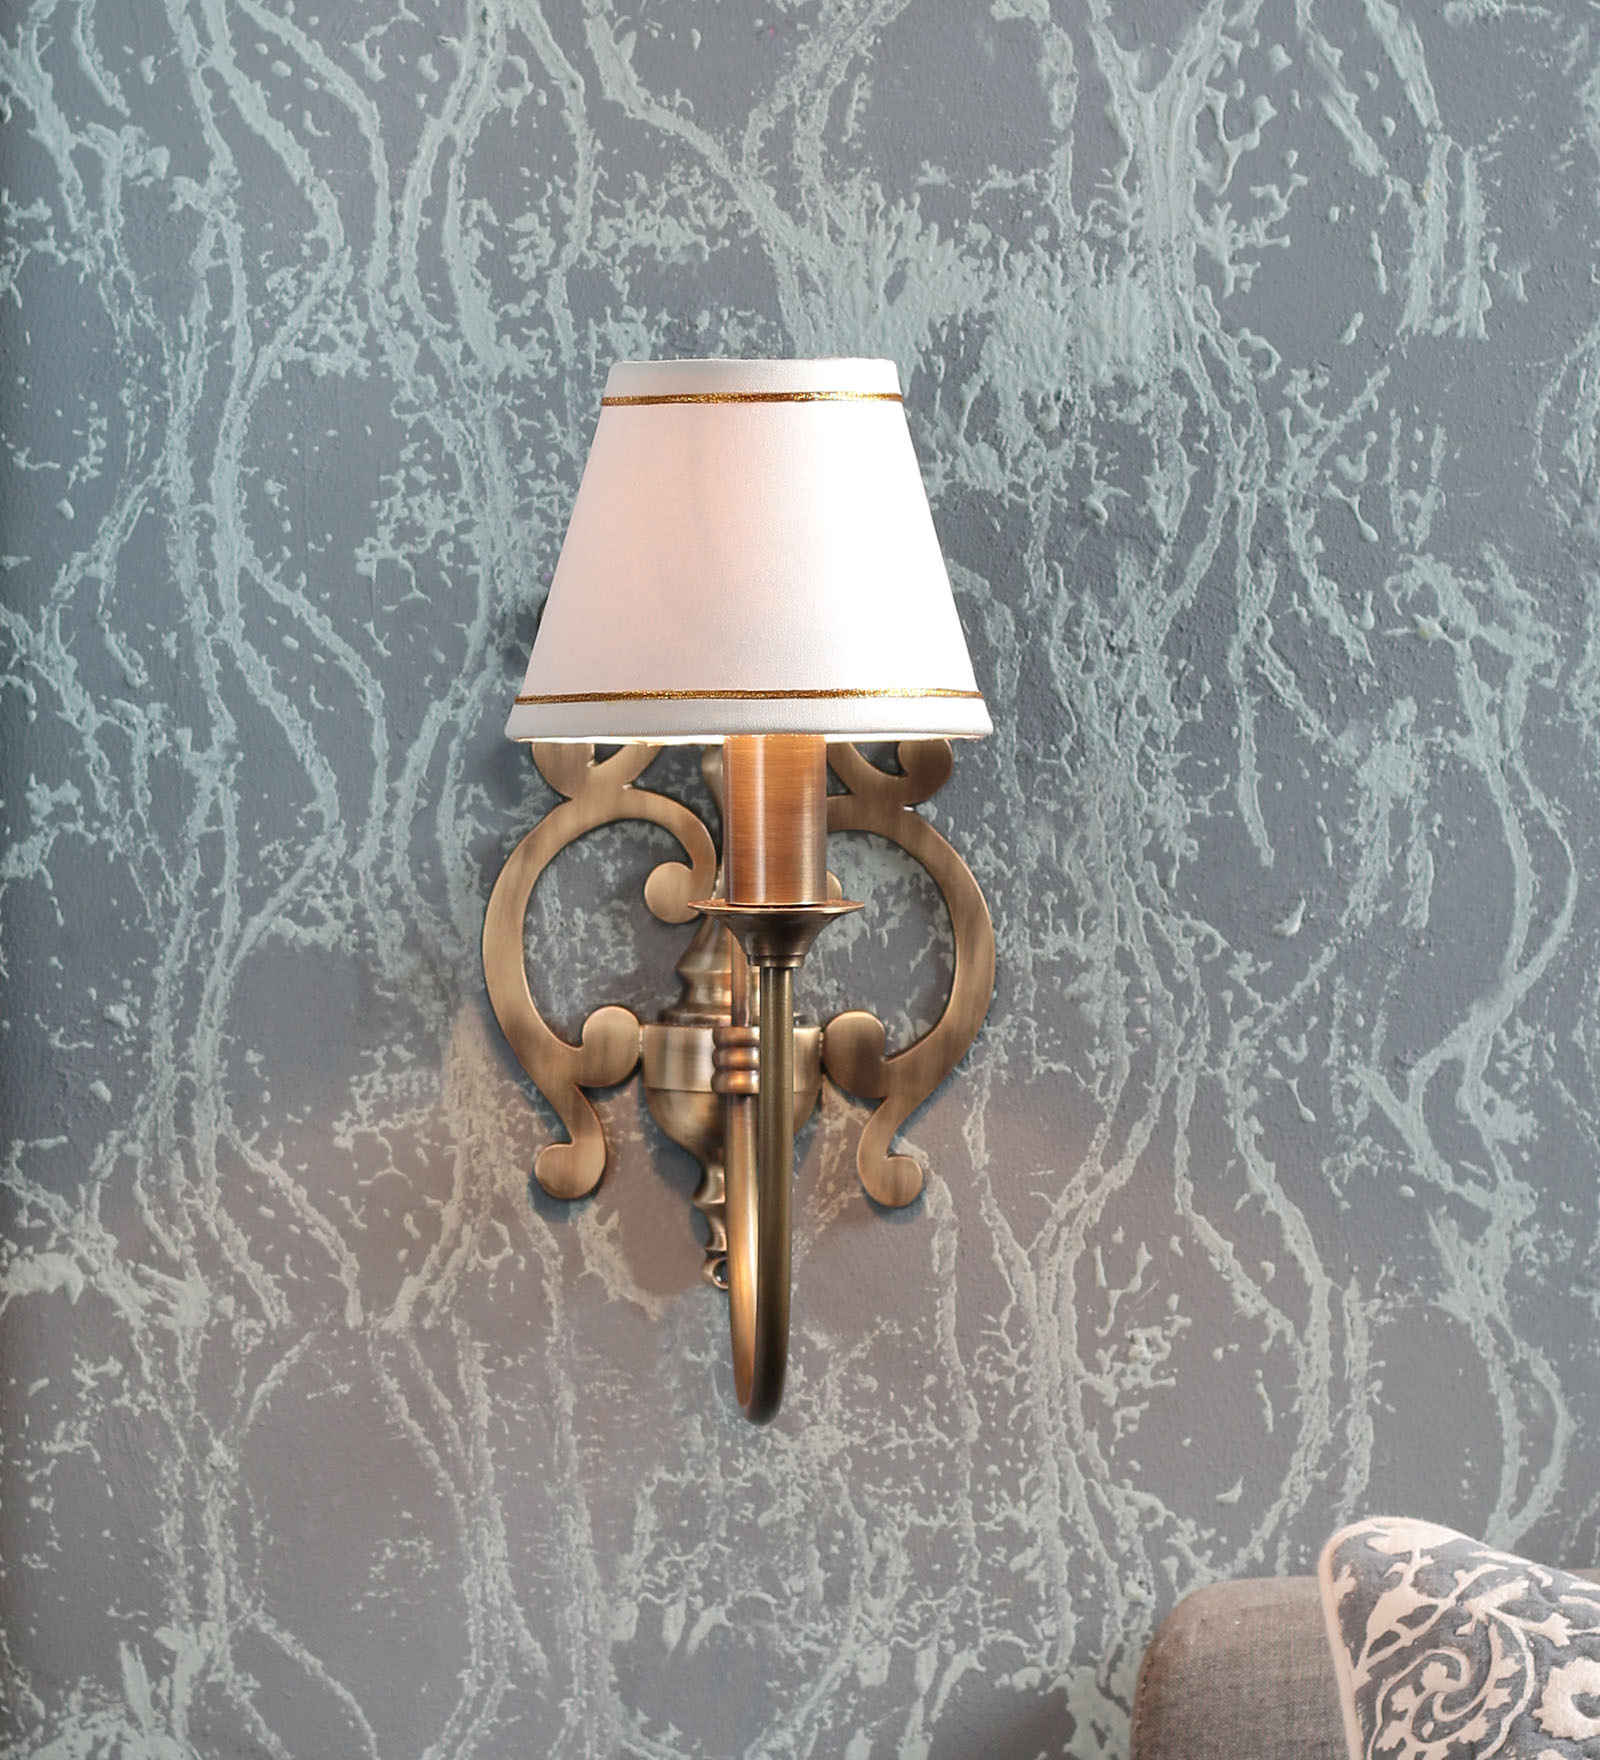 Detec Maroon Metal Table Lamp